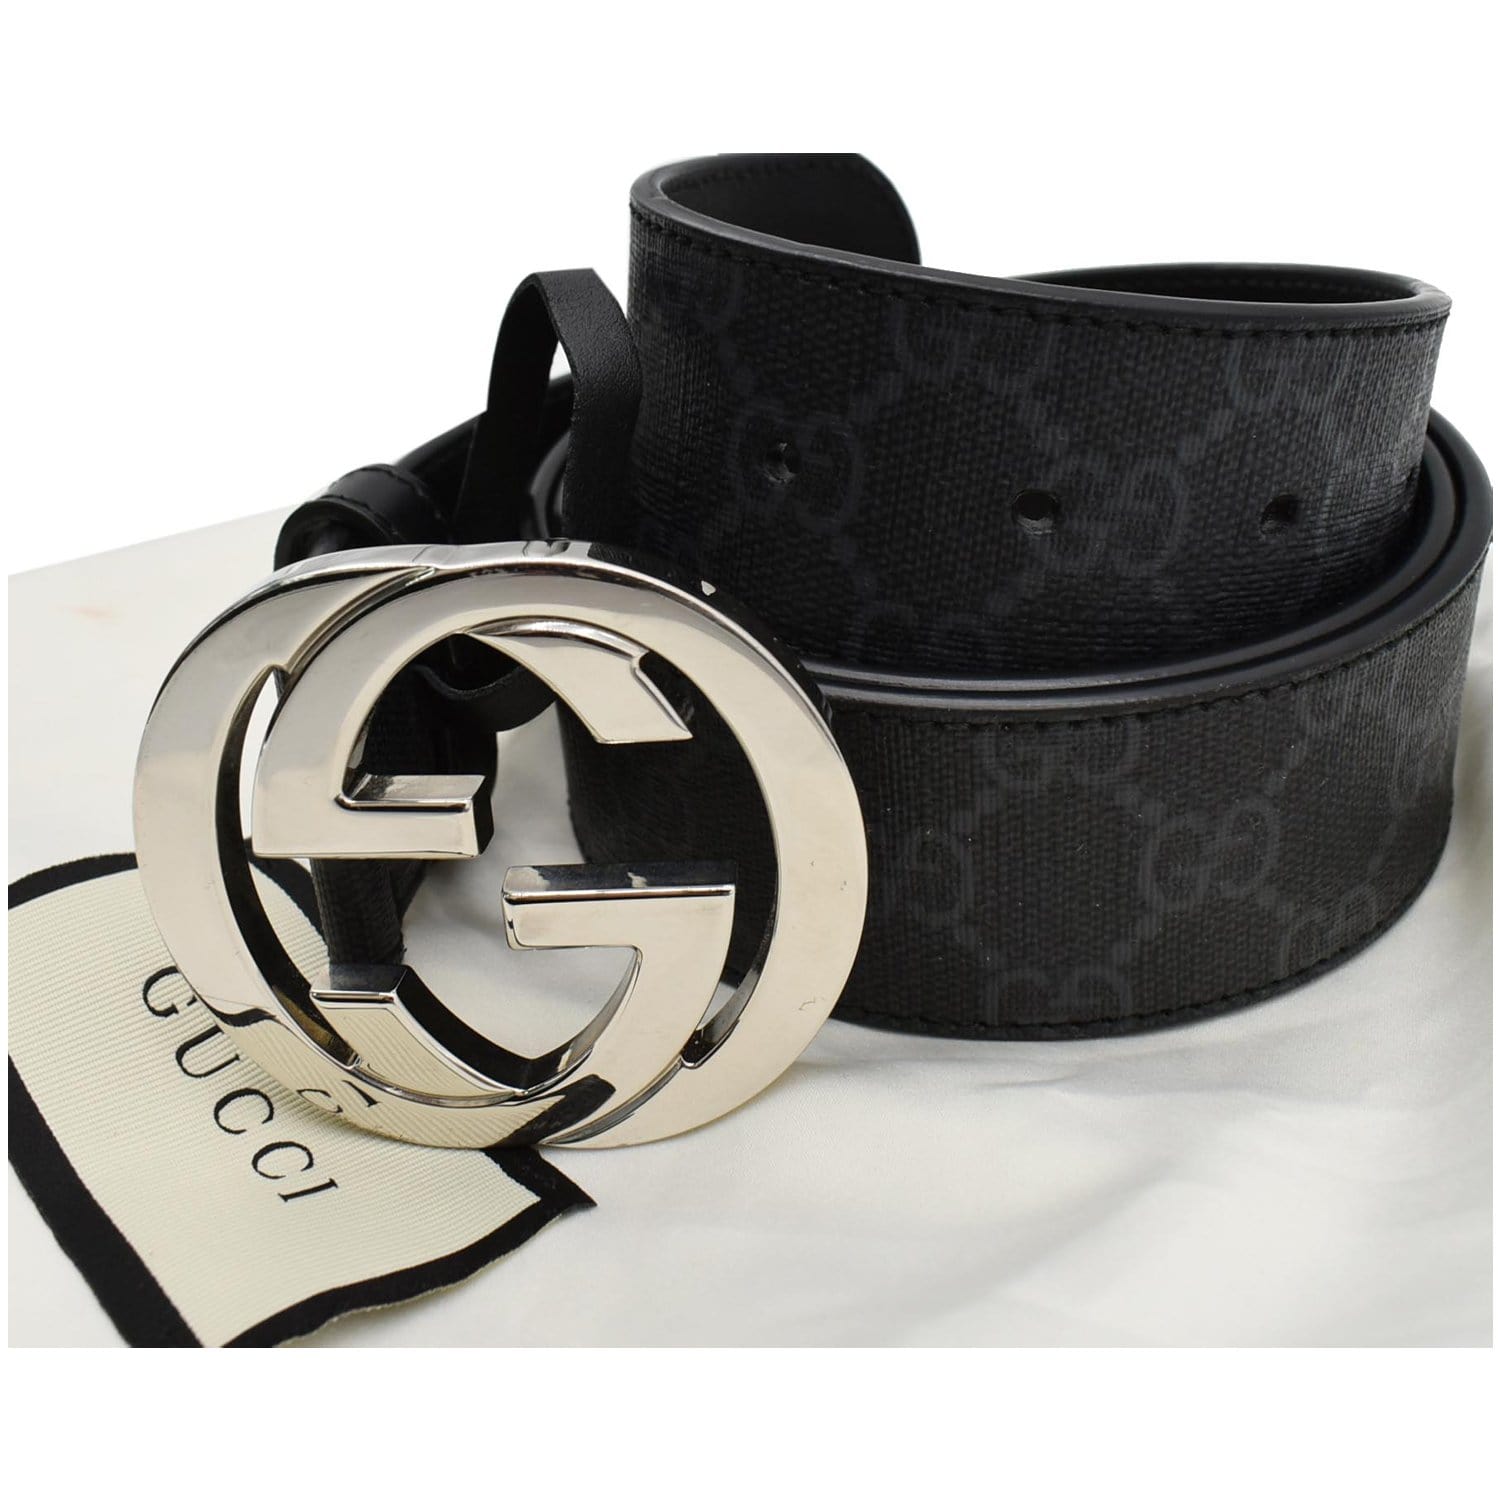 Gucci Belt in GG Supreme canvas, Men's Accessories